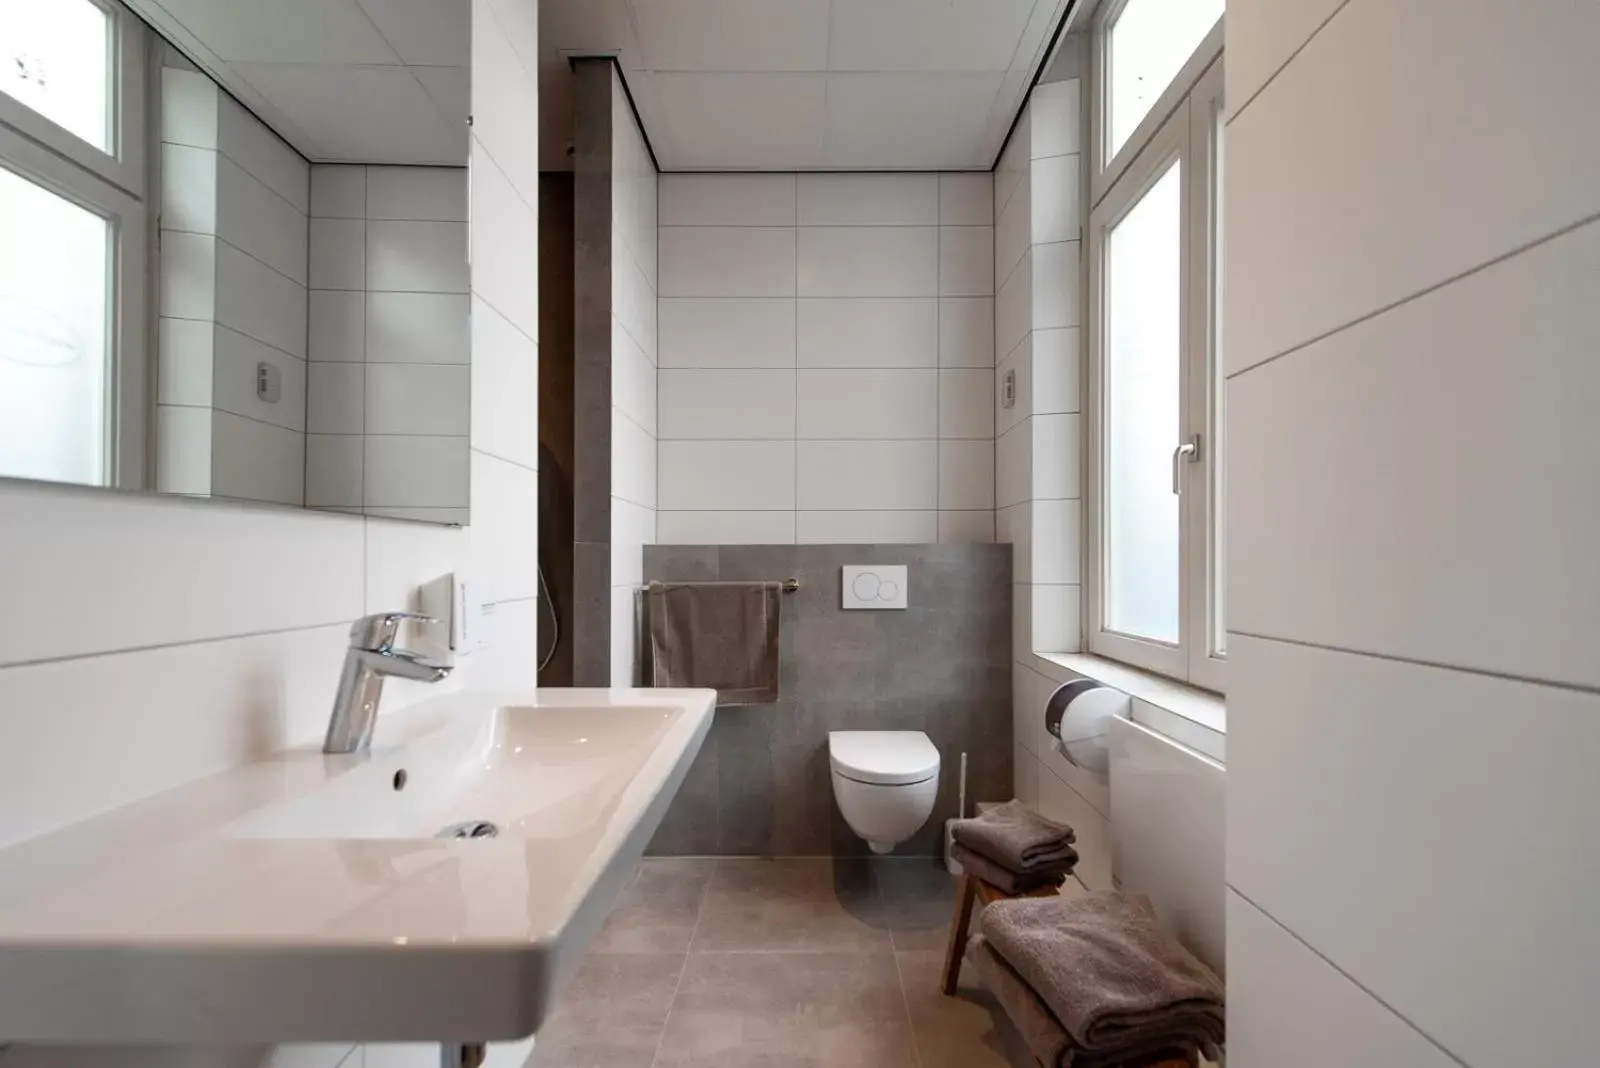 Bathroom in BnB prins Hendrik Venlo